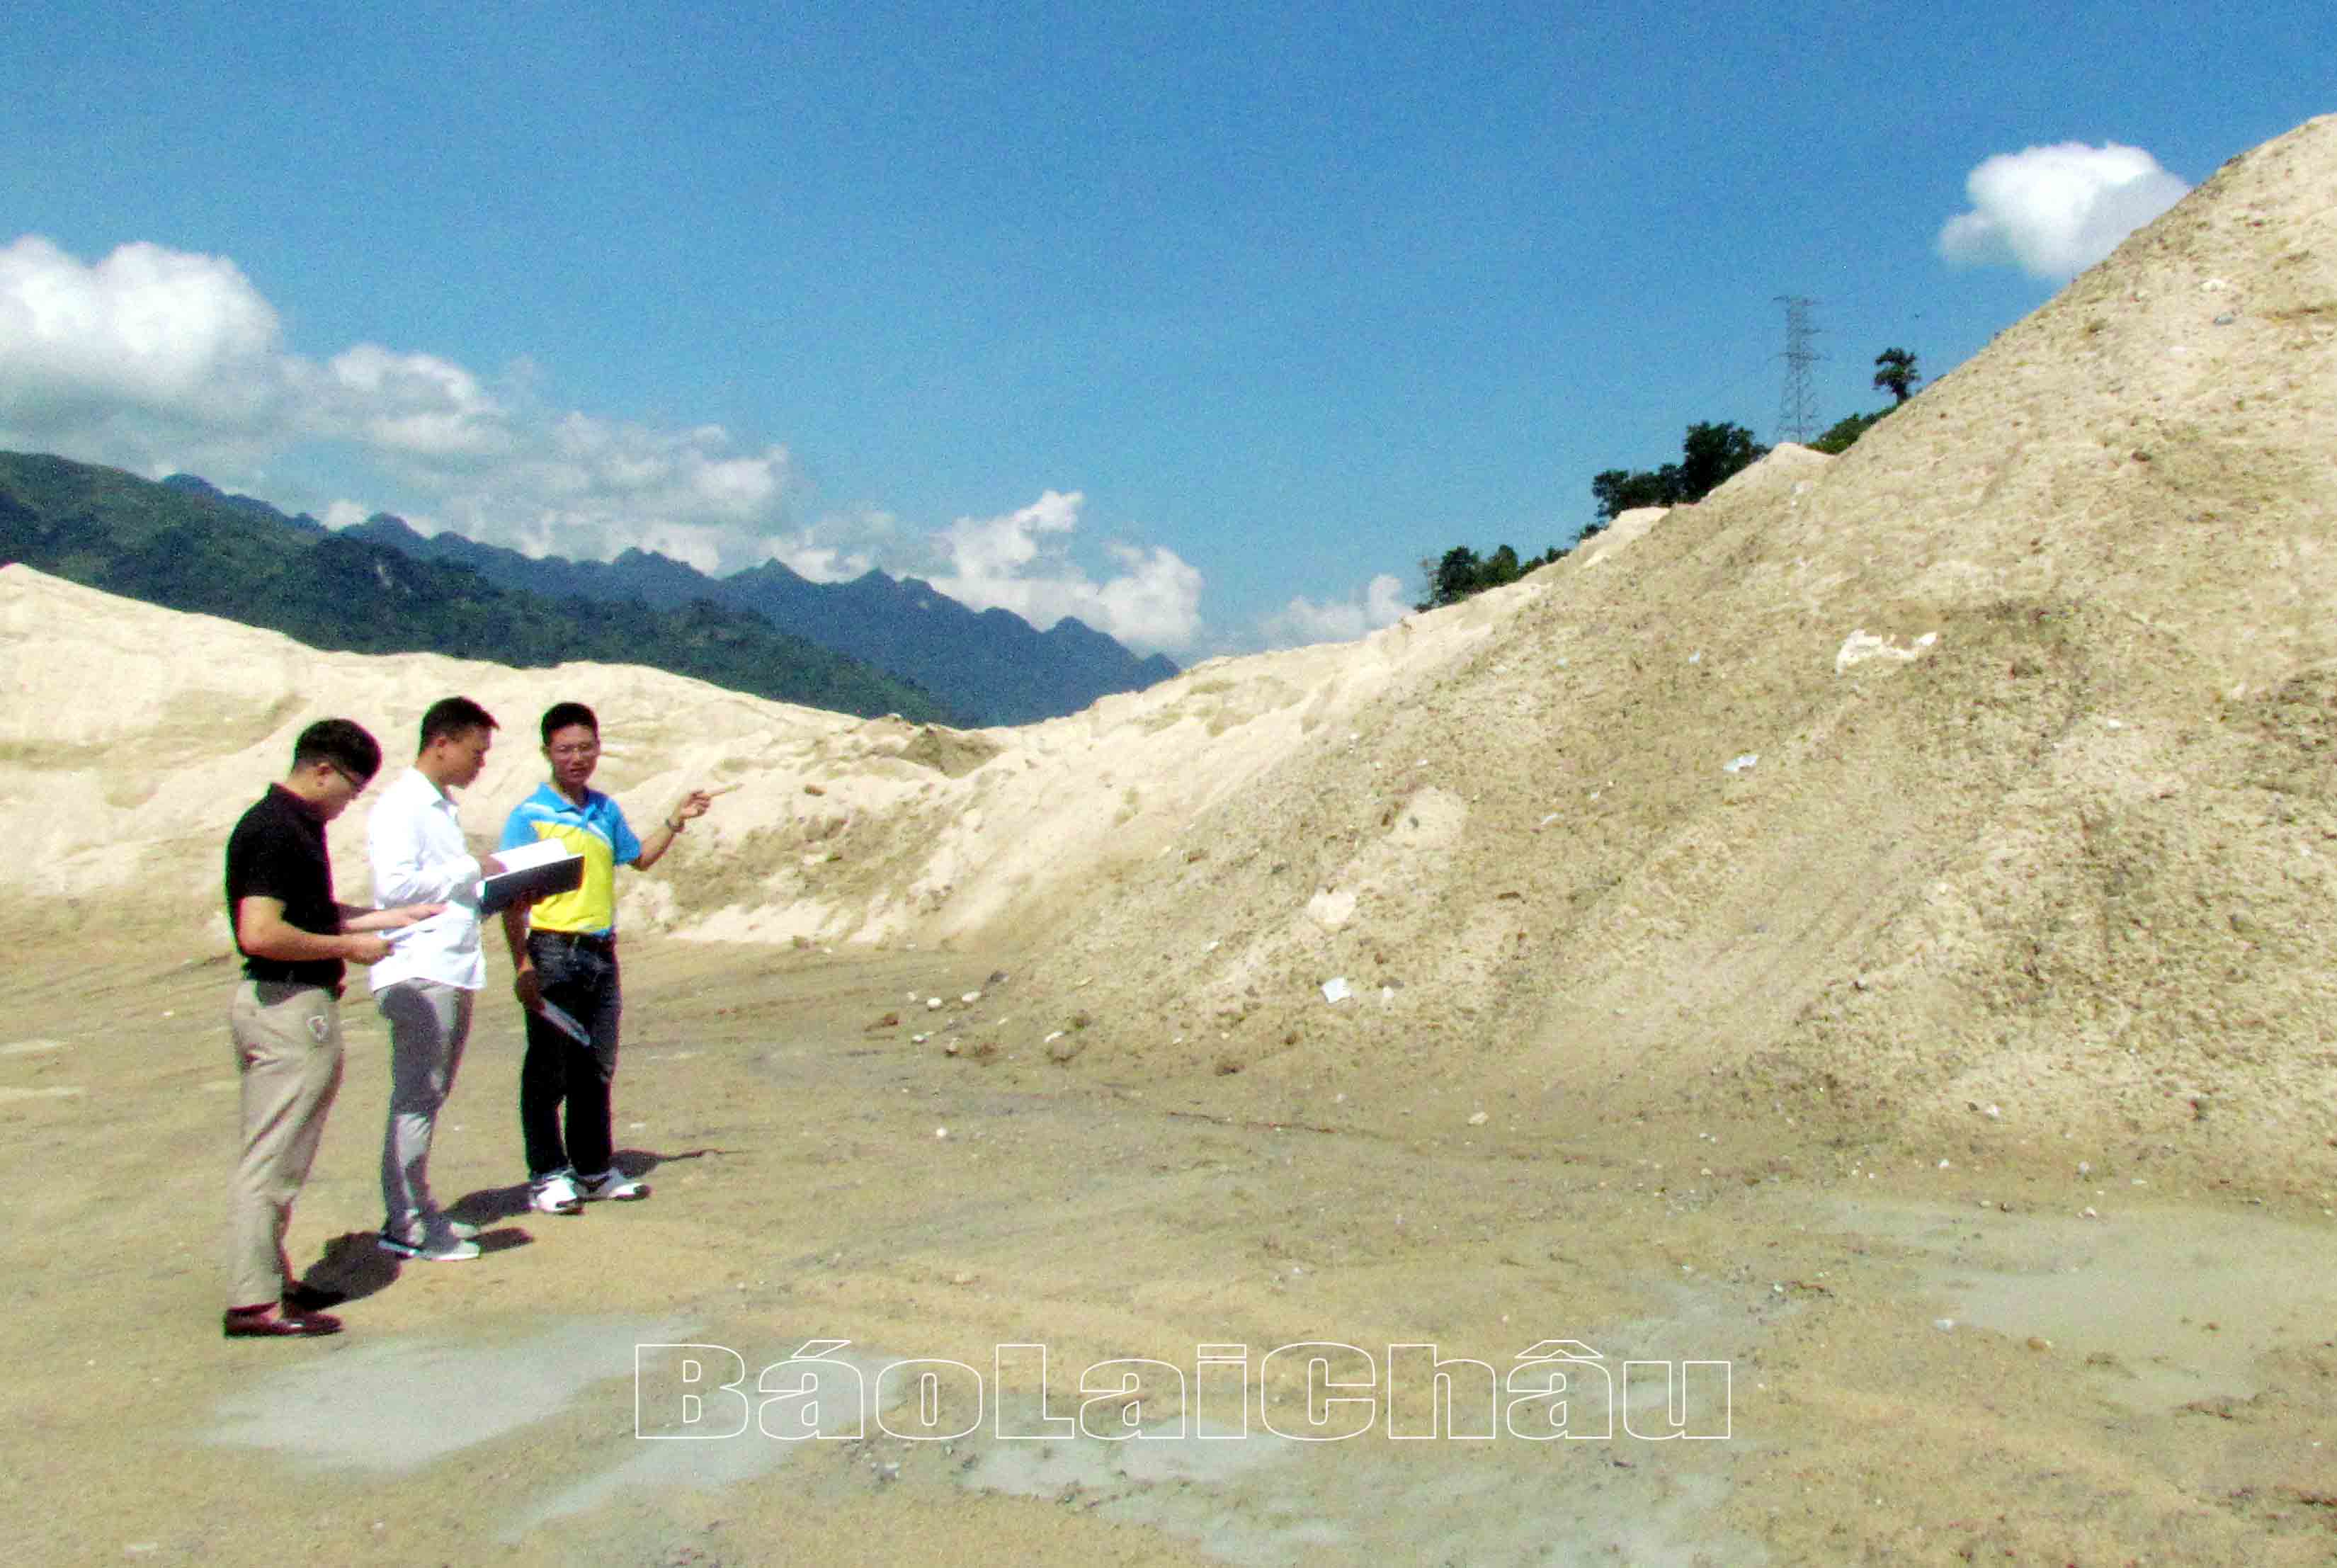 Cán bộ tài nguyên môi trường huyện Phong Thổ, xã Nậm Xe nắm tình hình việc khai thác, sử dụng cát của Công ty Cổ phần SCI Lai Châu (chủ đầu tư) xây dựng công trình thủy điện Nậm Xe.